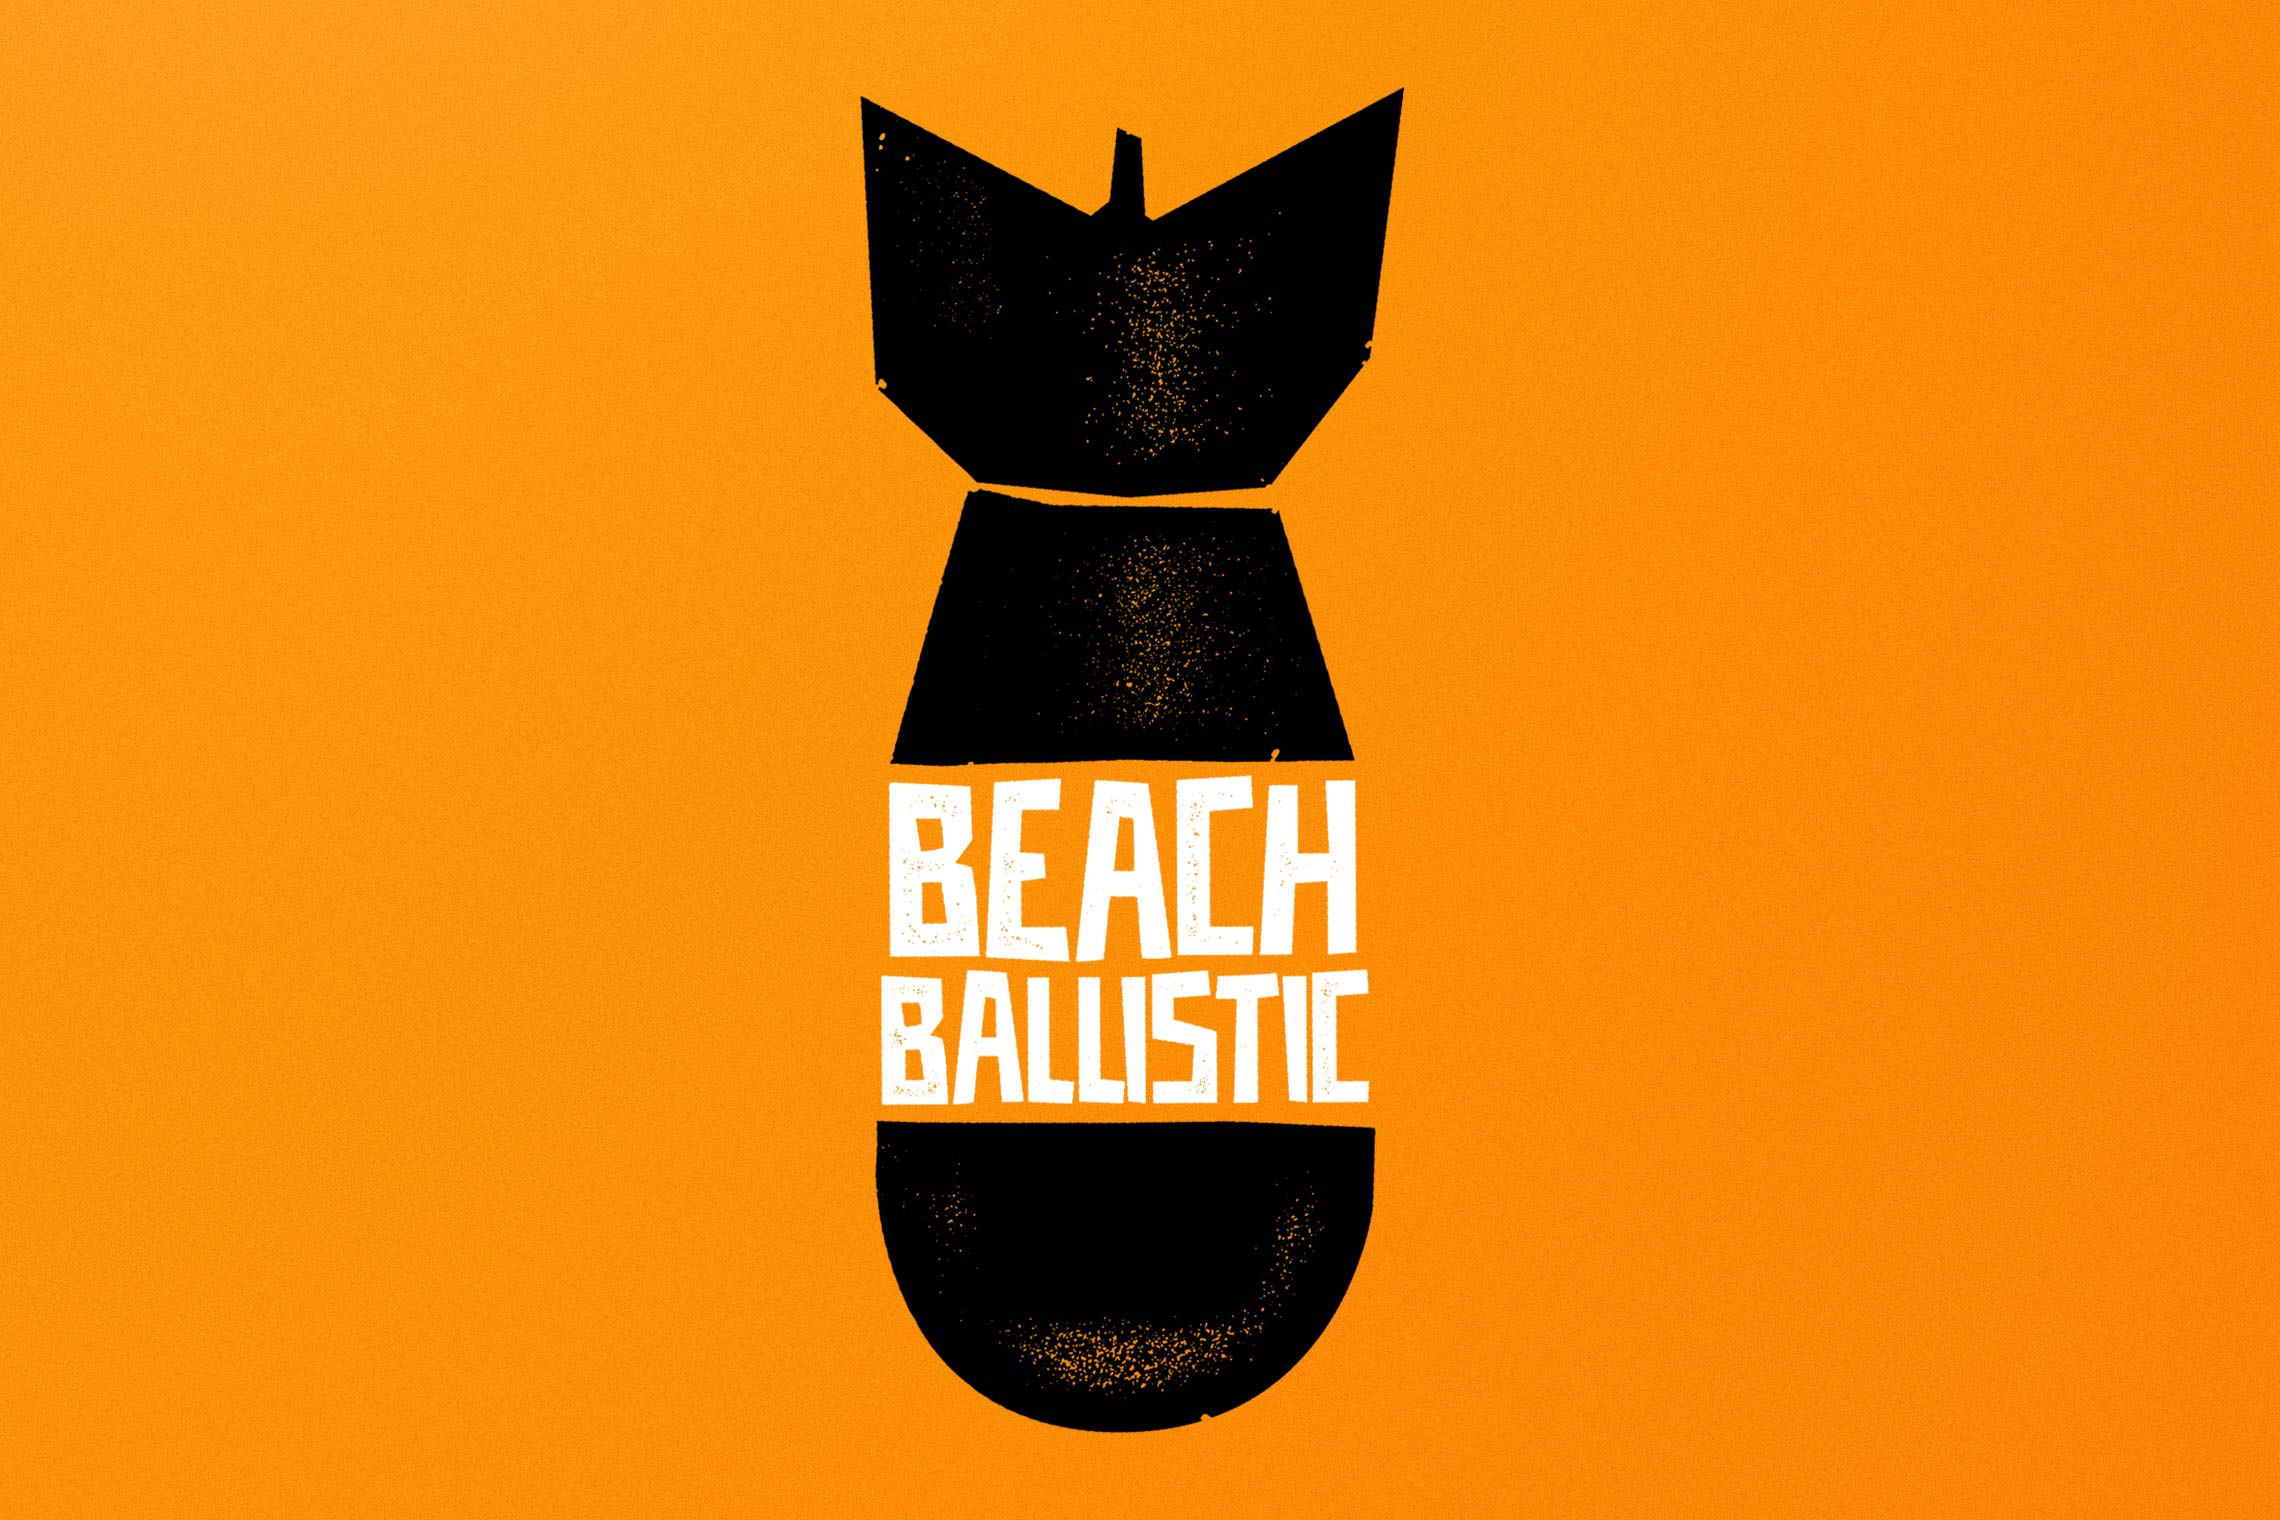 Beach Ballistic